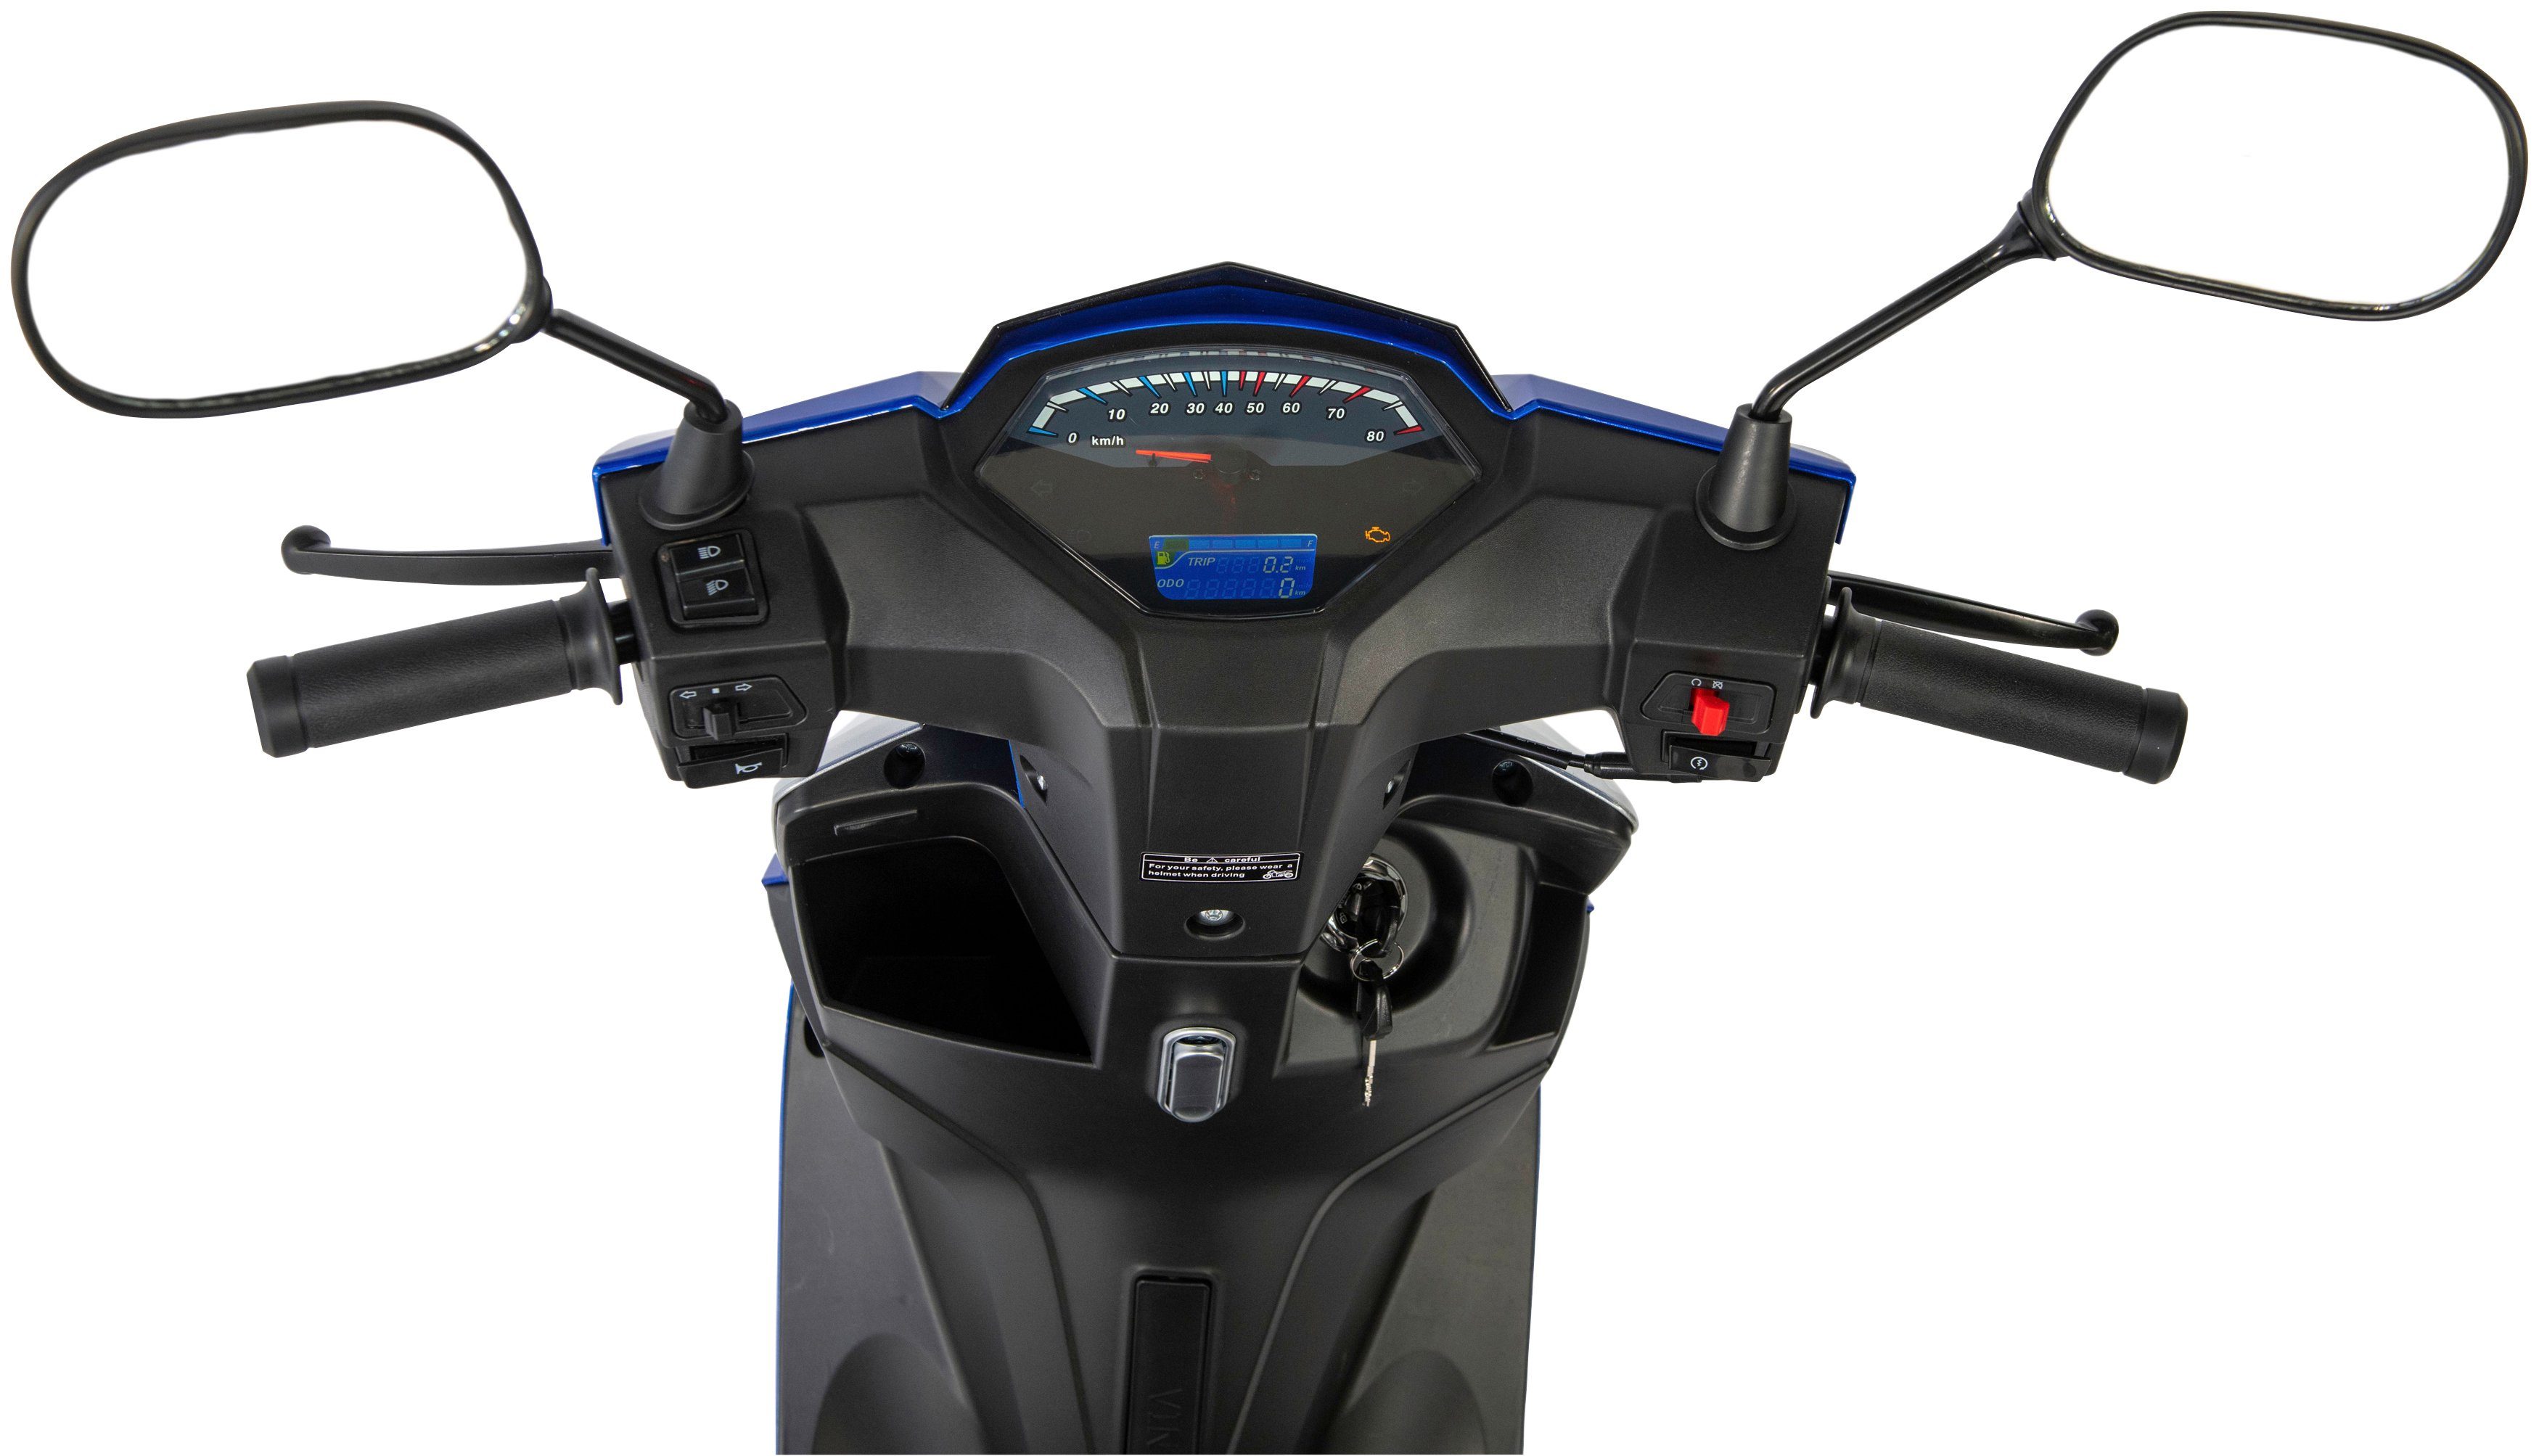 GT 50 ccm, X 5 Euro blau Sonic Motorroller 50-45, km/h, UNION 45